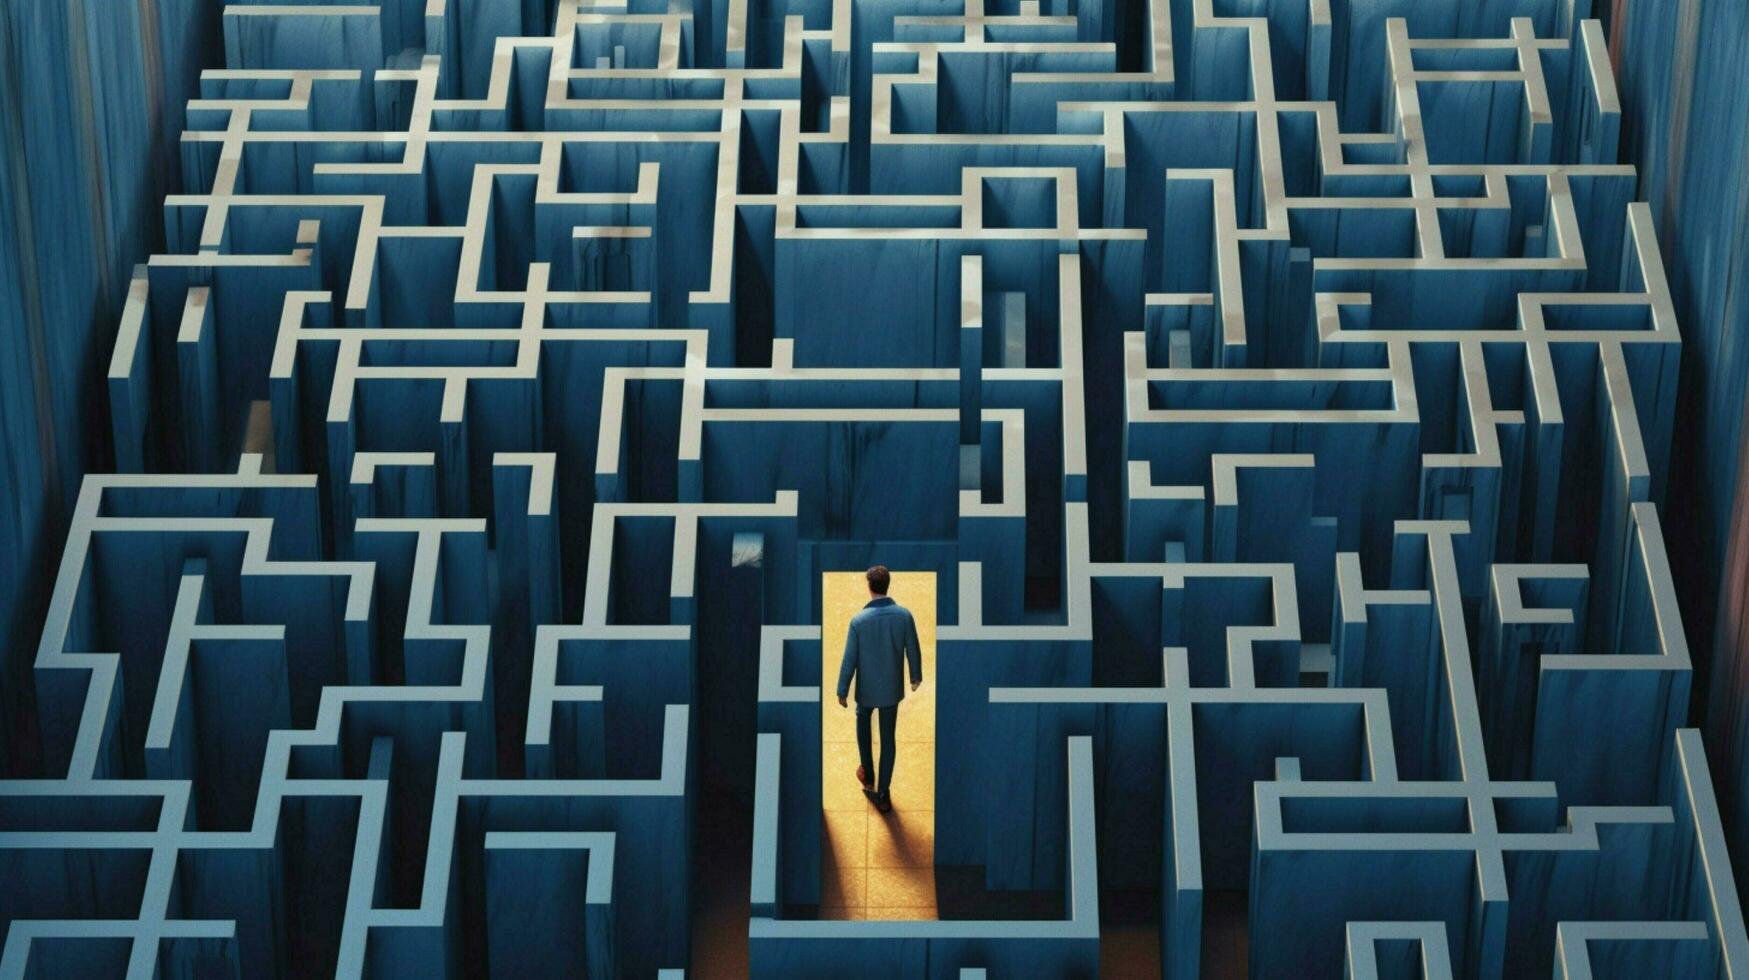 a man walks through a maze with the door open photo